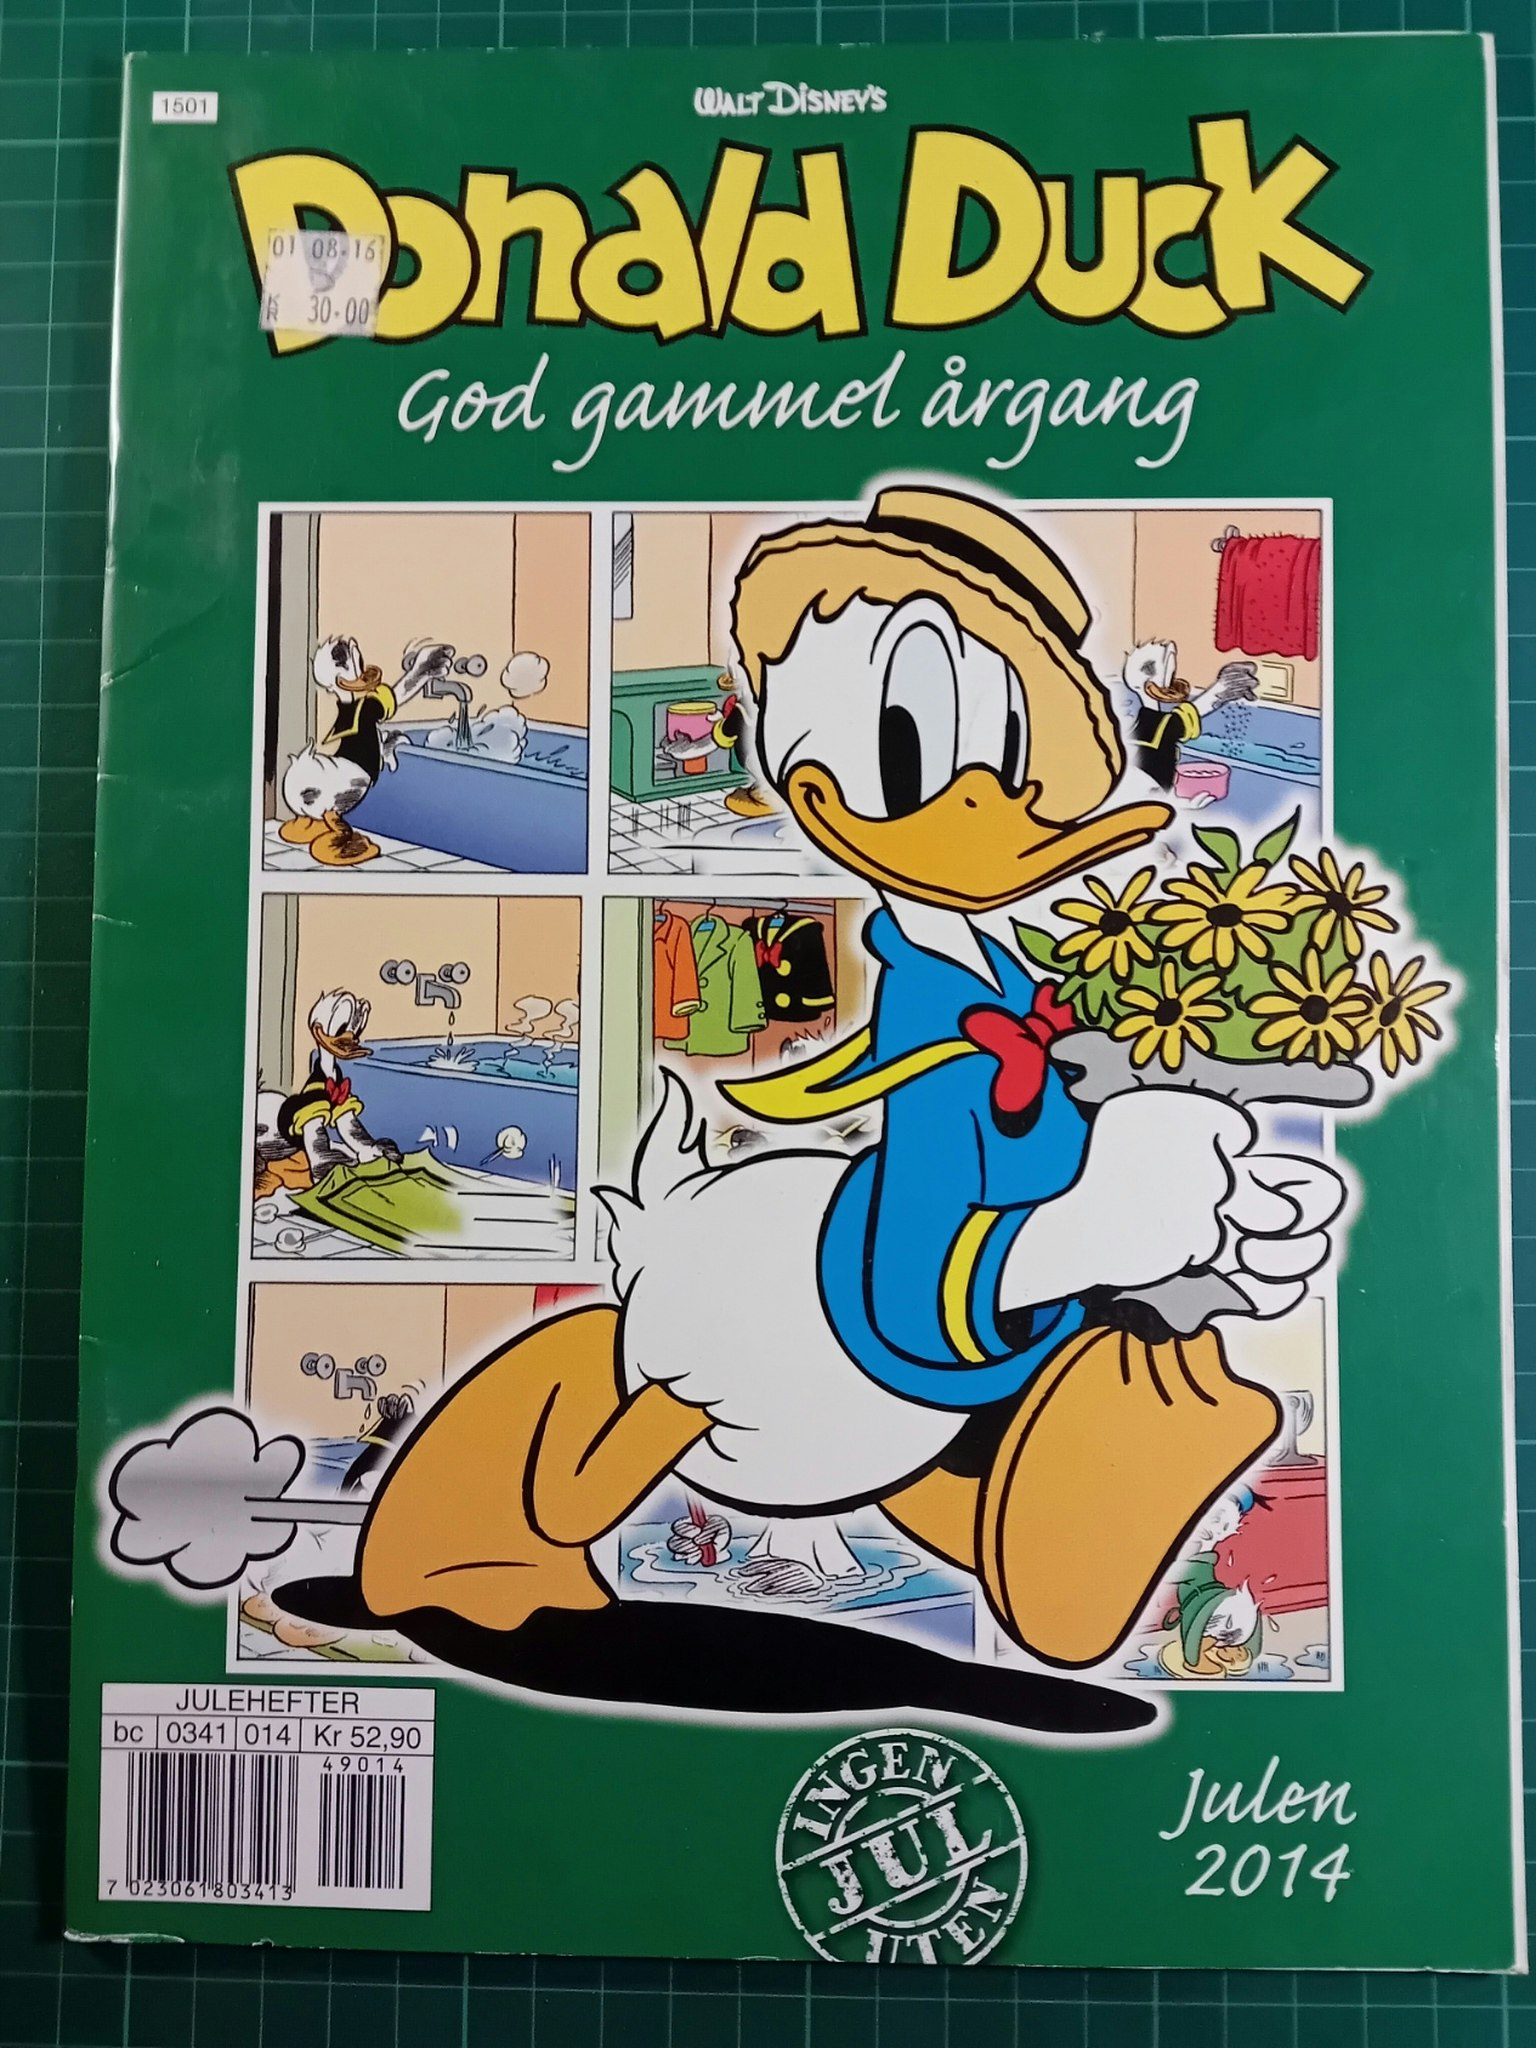 Donald Duck God gammel årgang 2014